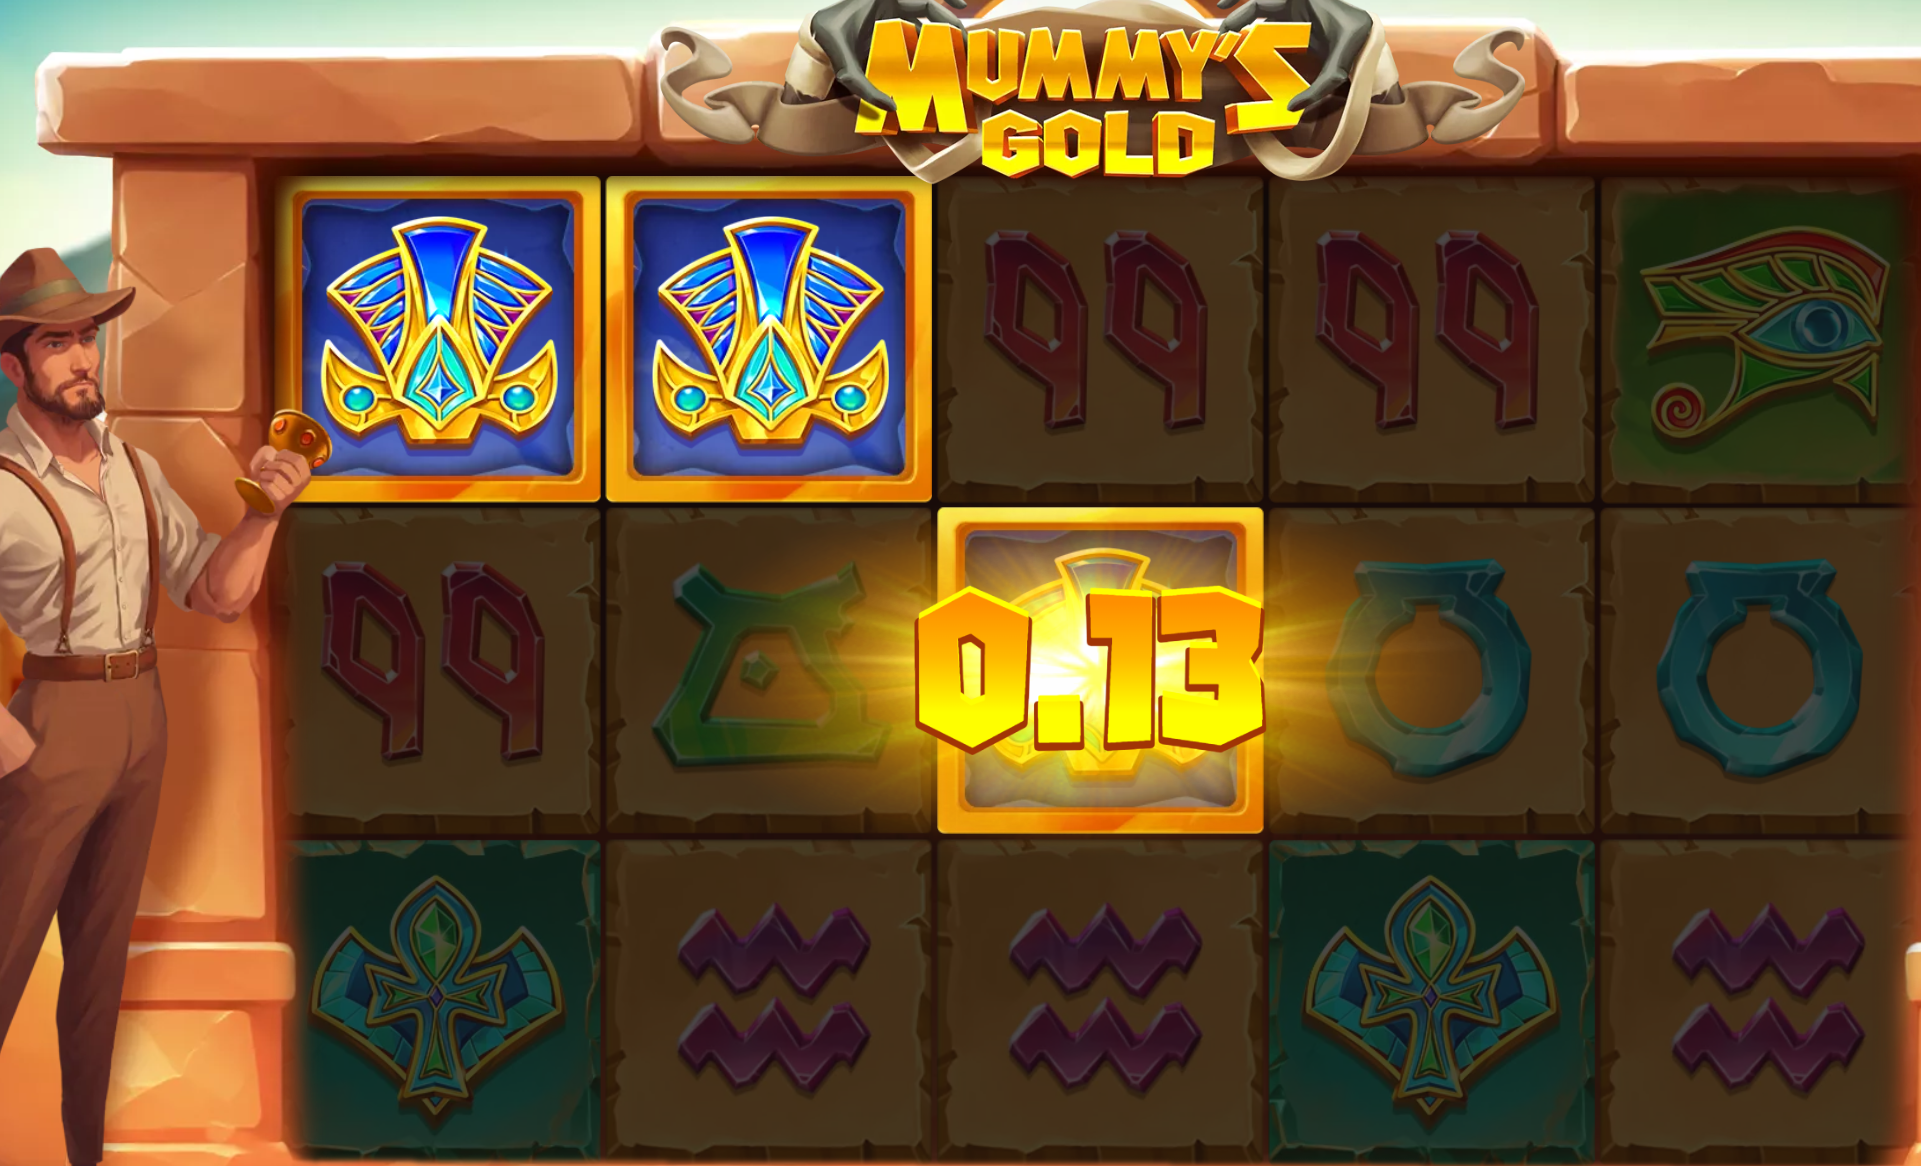 Uma previsão correcta da cor duplica os ganhos na slot Mummy's Gold